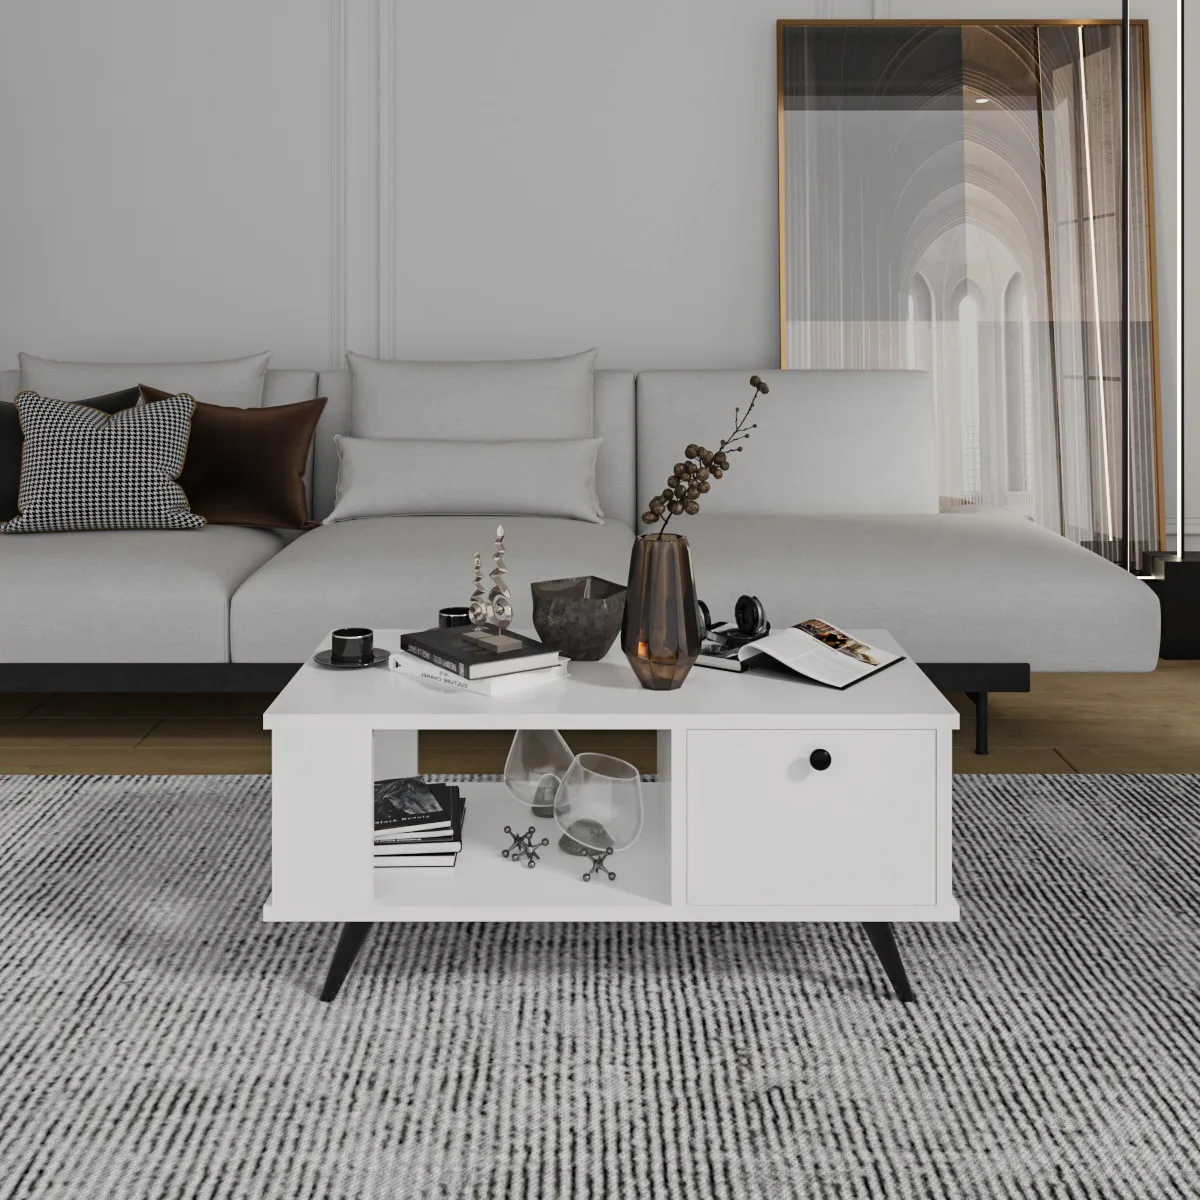 AFOSSA oturma odası mobilya Modern avrupa sehpa depolama ile türkiye'den çekmeceler çay masası ile Nordic sehpa